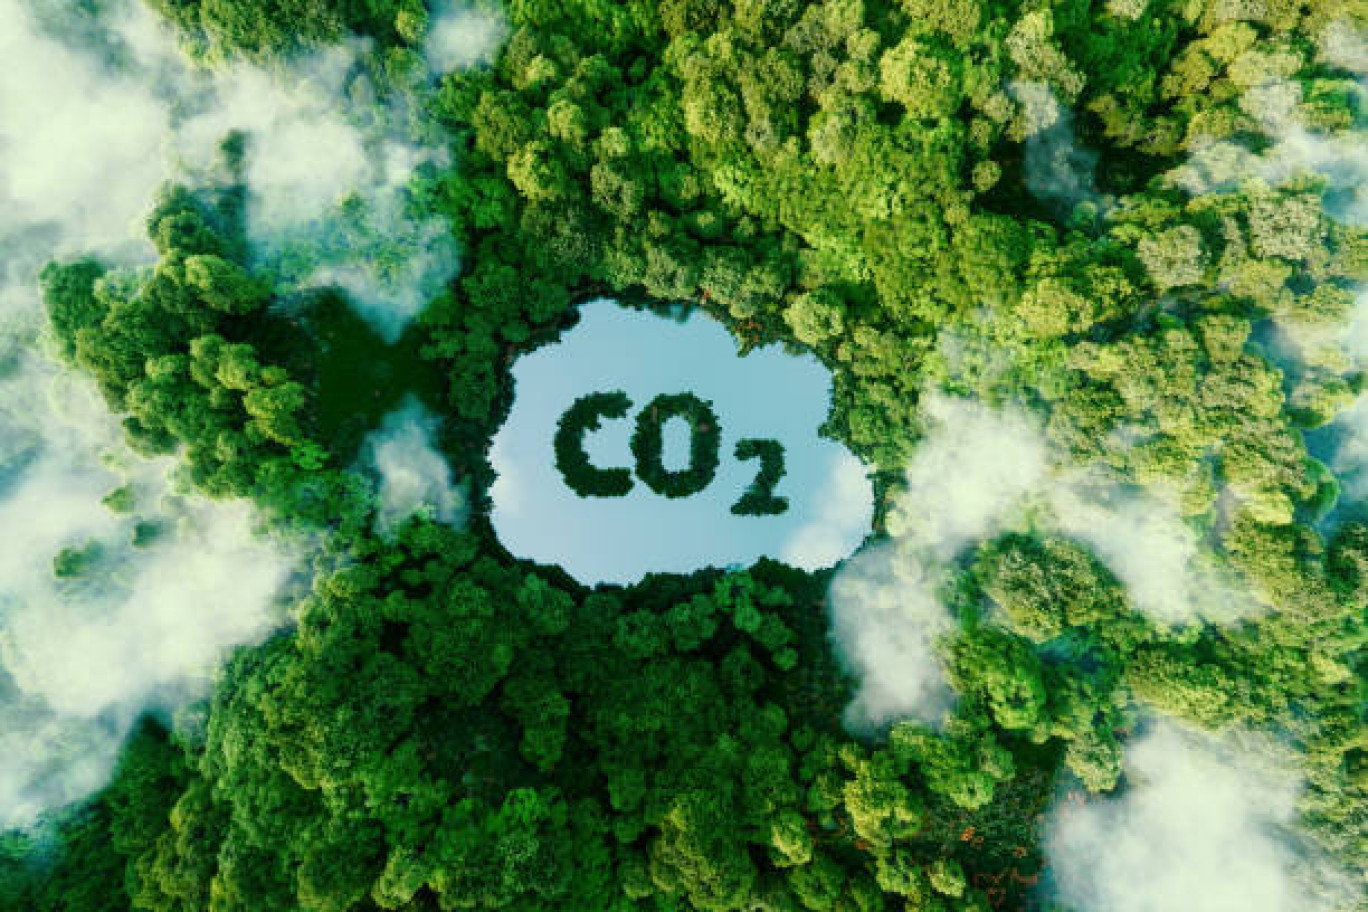 Priorité : réduire le CO2 dans l'atmosphère. 